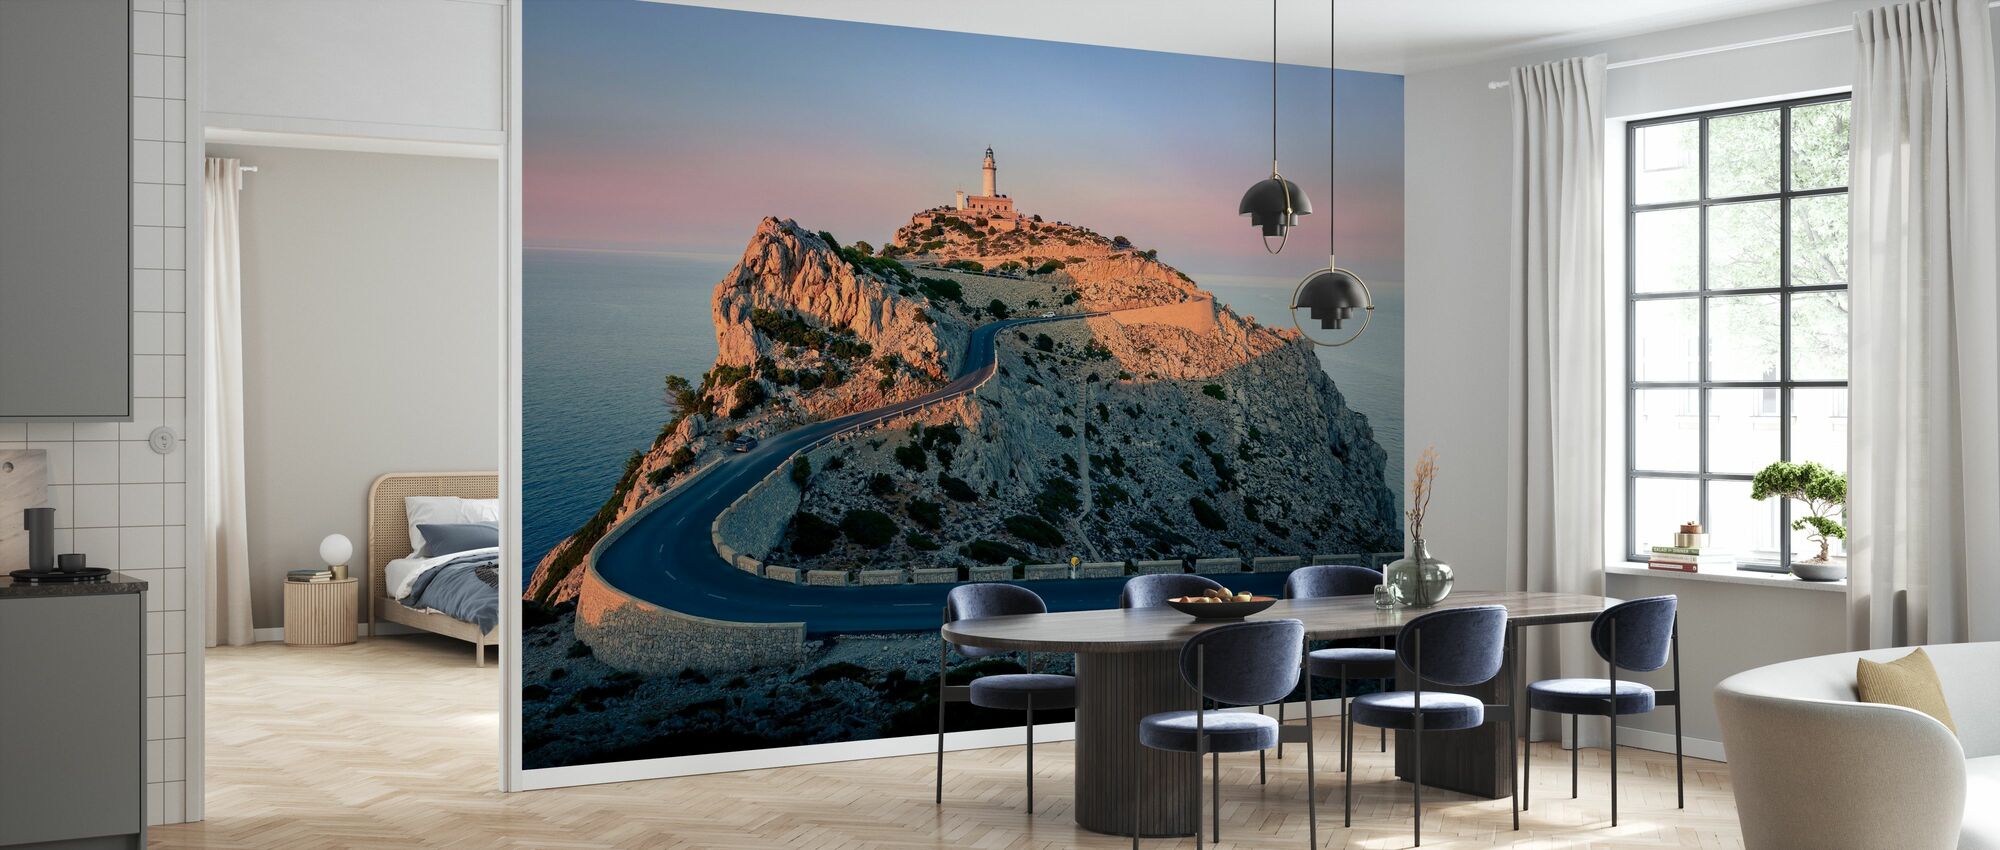 preámbulo Adecuado gusto Lighthouse at Cap Formentor - Mallorca - fotomural de alta calidad y envío  gratuito - Photowall